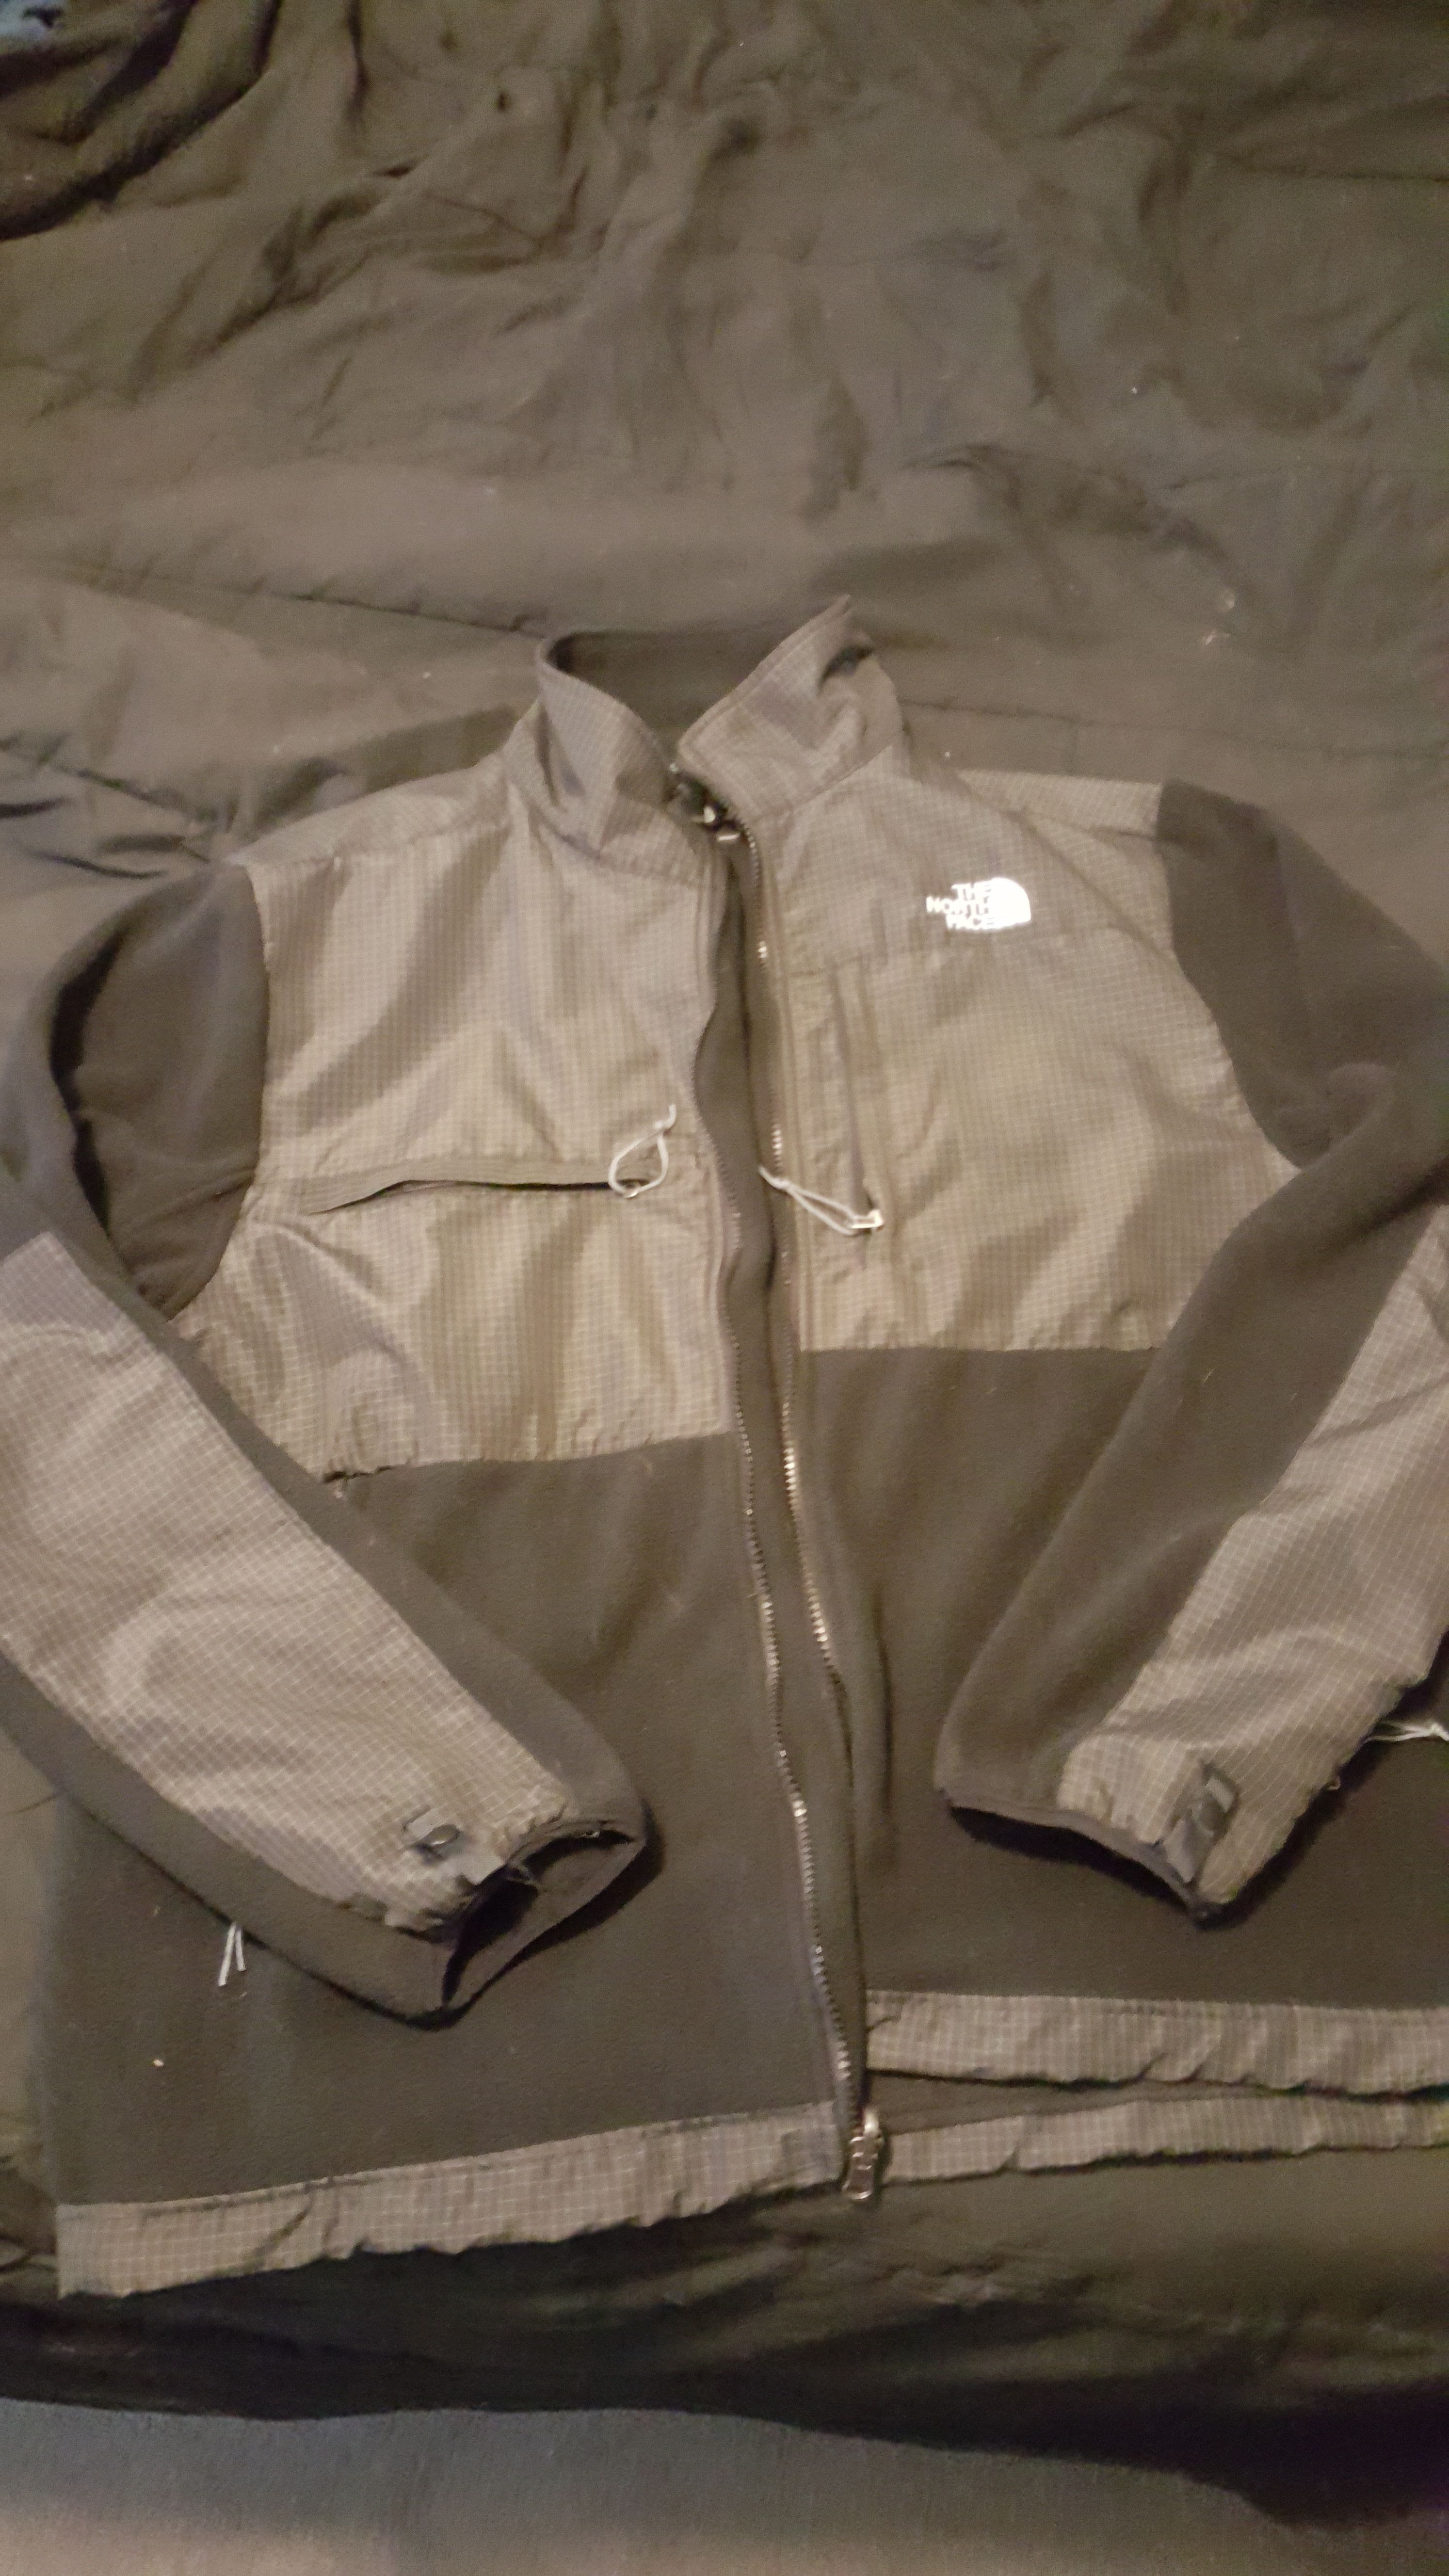 Northface fleece jacket size 3XL